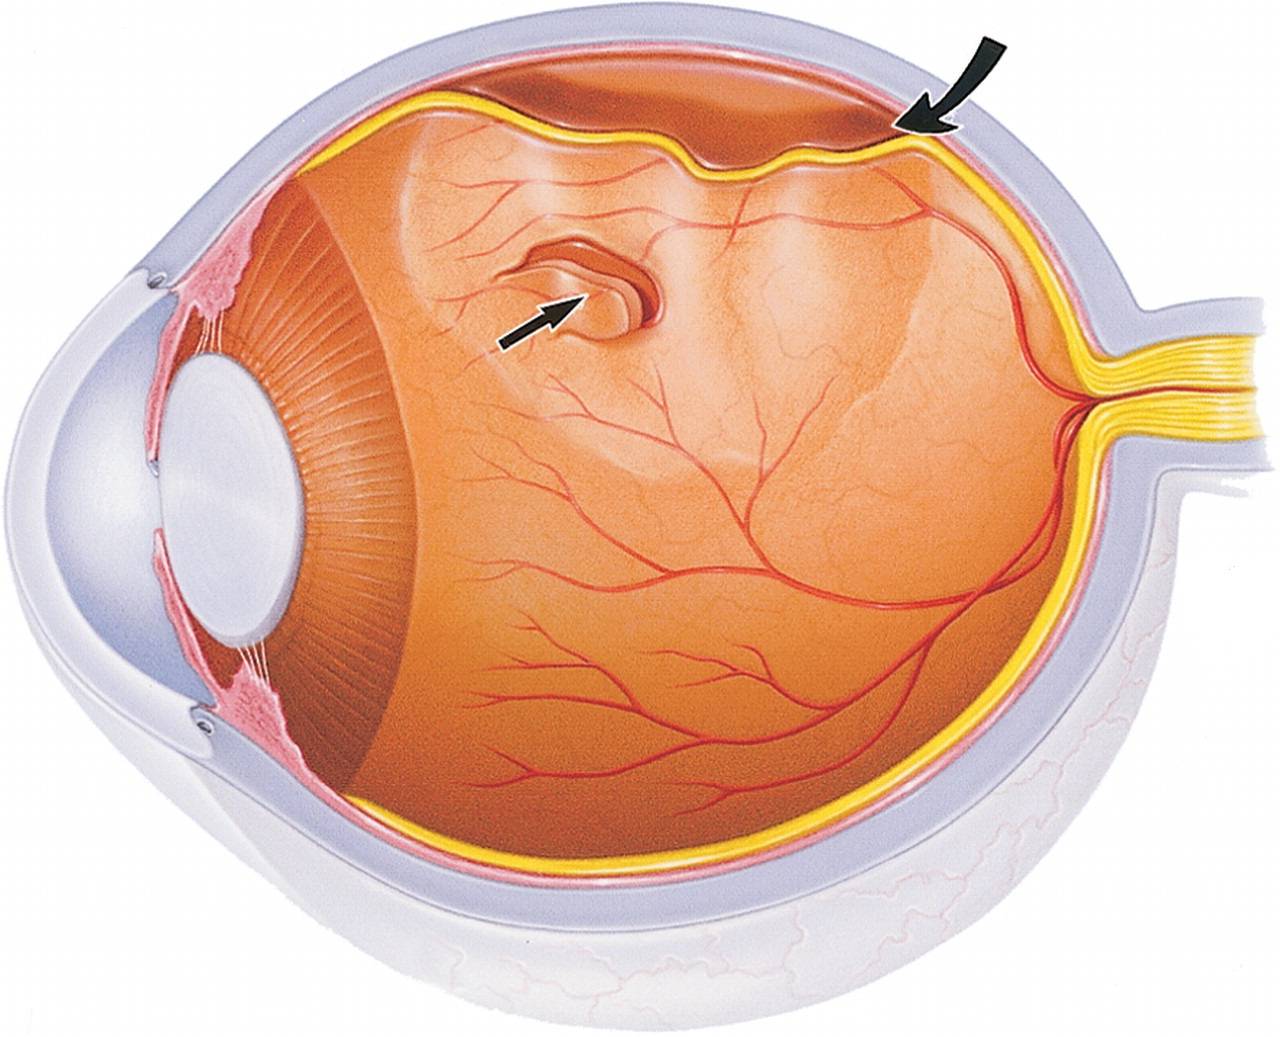 Эрозия роговицы глаза: лечение, причины, симптомы, диагностика и осложнения